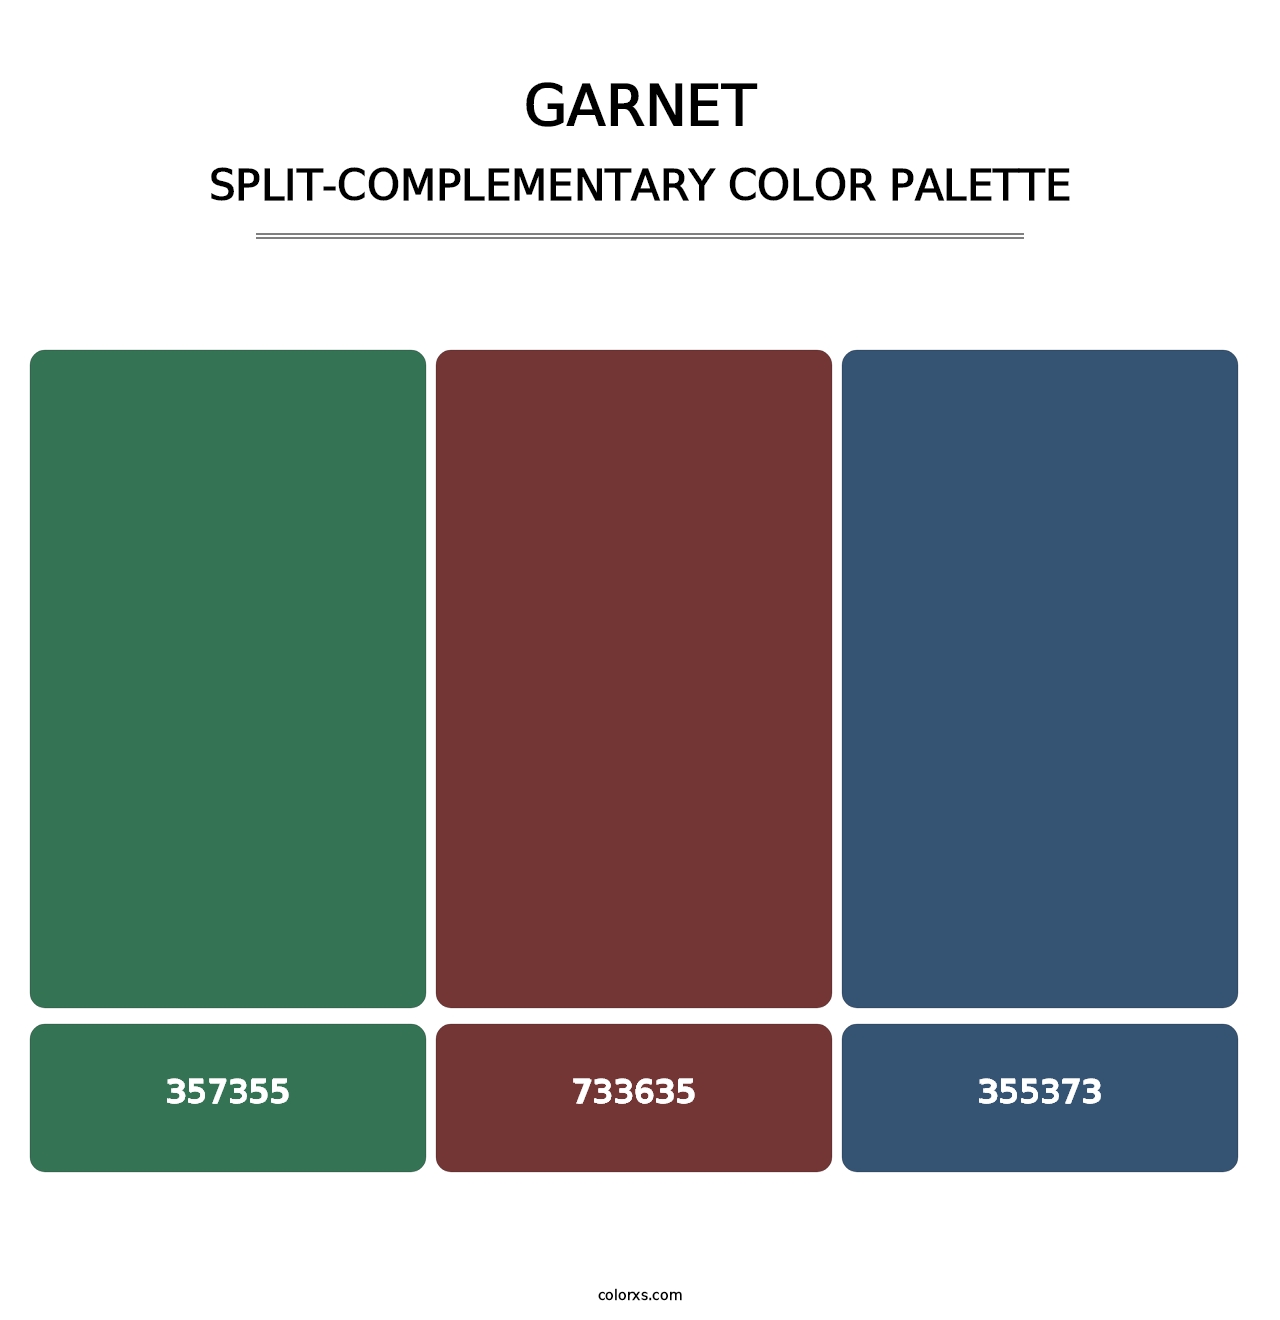 Garnet - Split-Complementary Color Palette